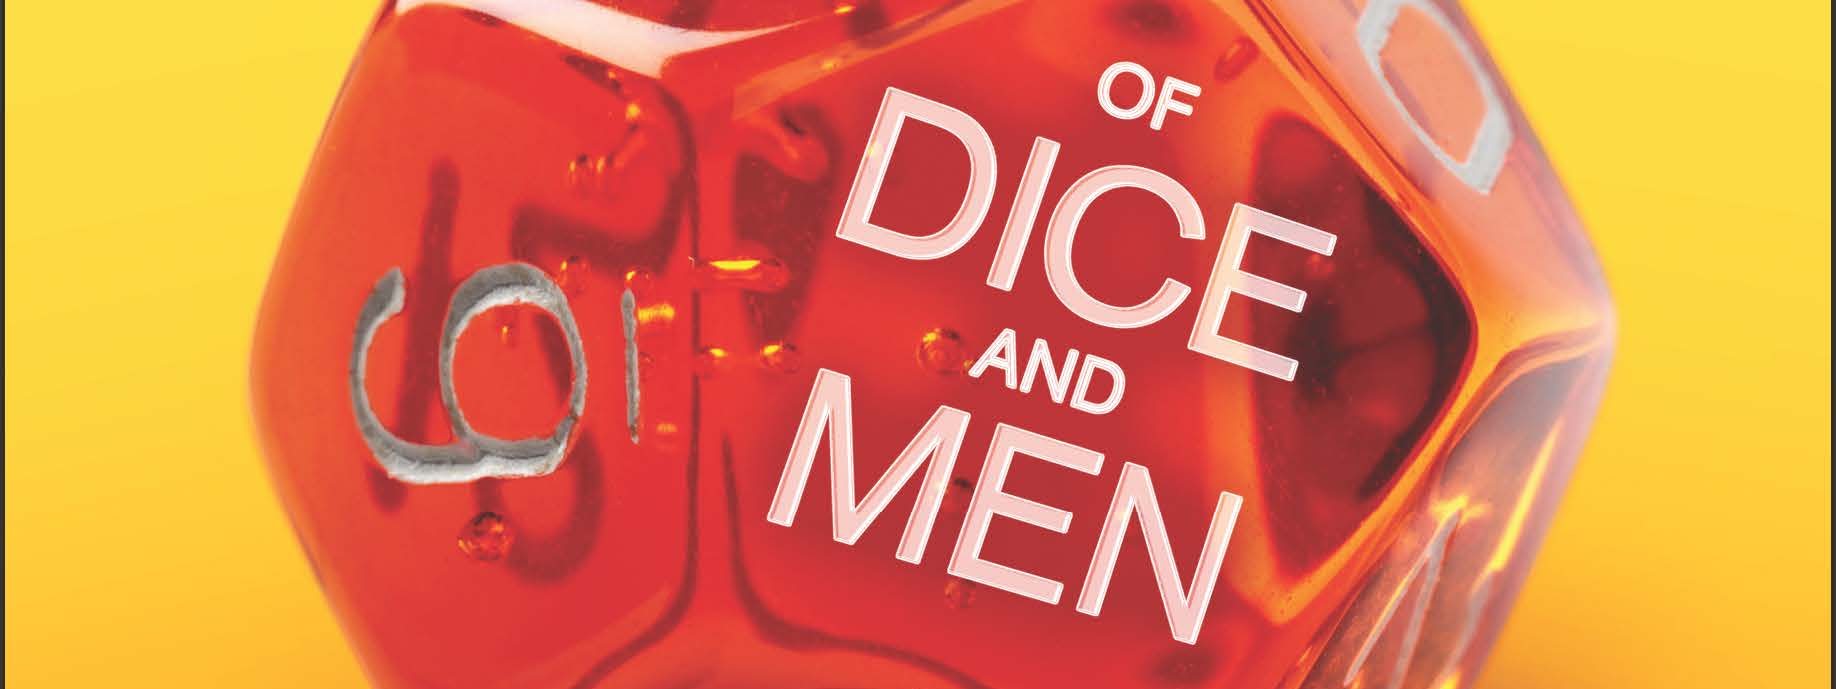 Of Dice and Men by David M. Ewalt